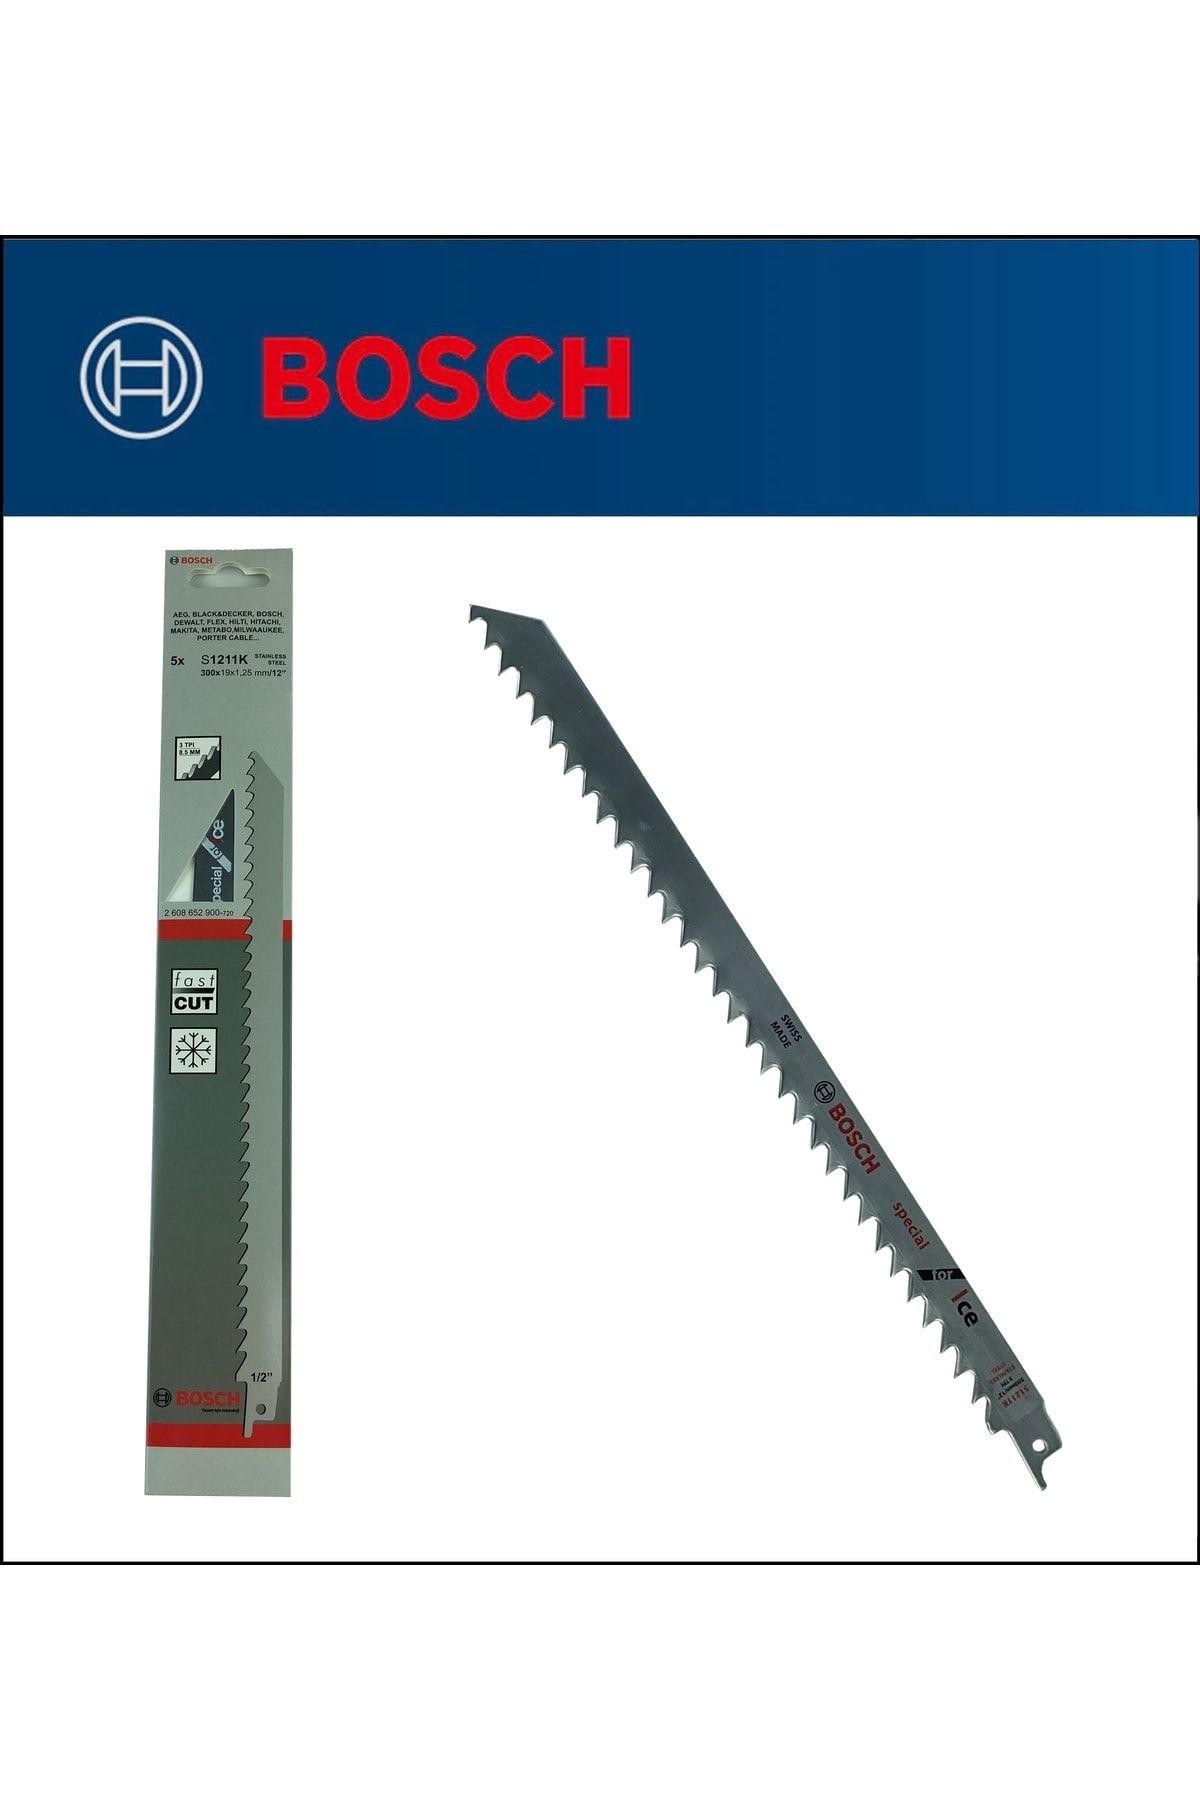 Bosch - Tilki Kuyruğu Bıçağı S 1211 K - Buz Ve Kemik Kesme 1'li Paket